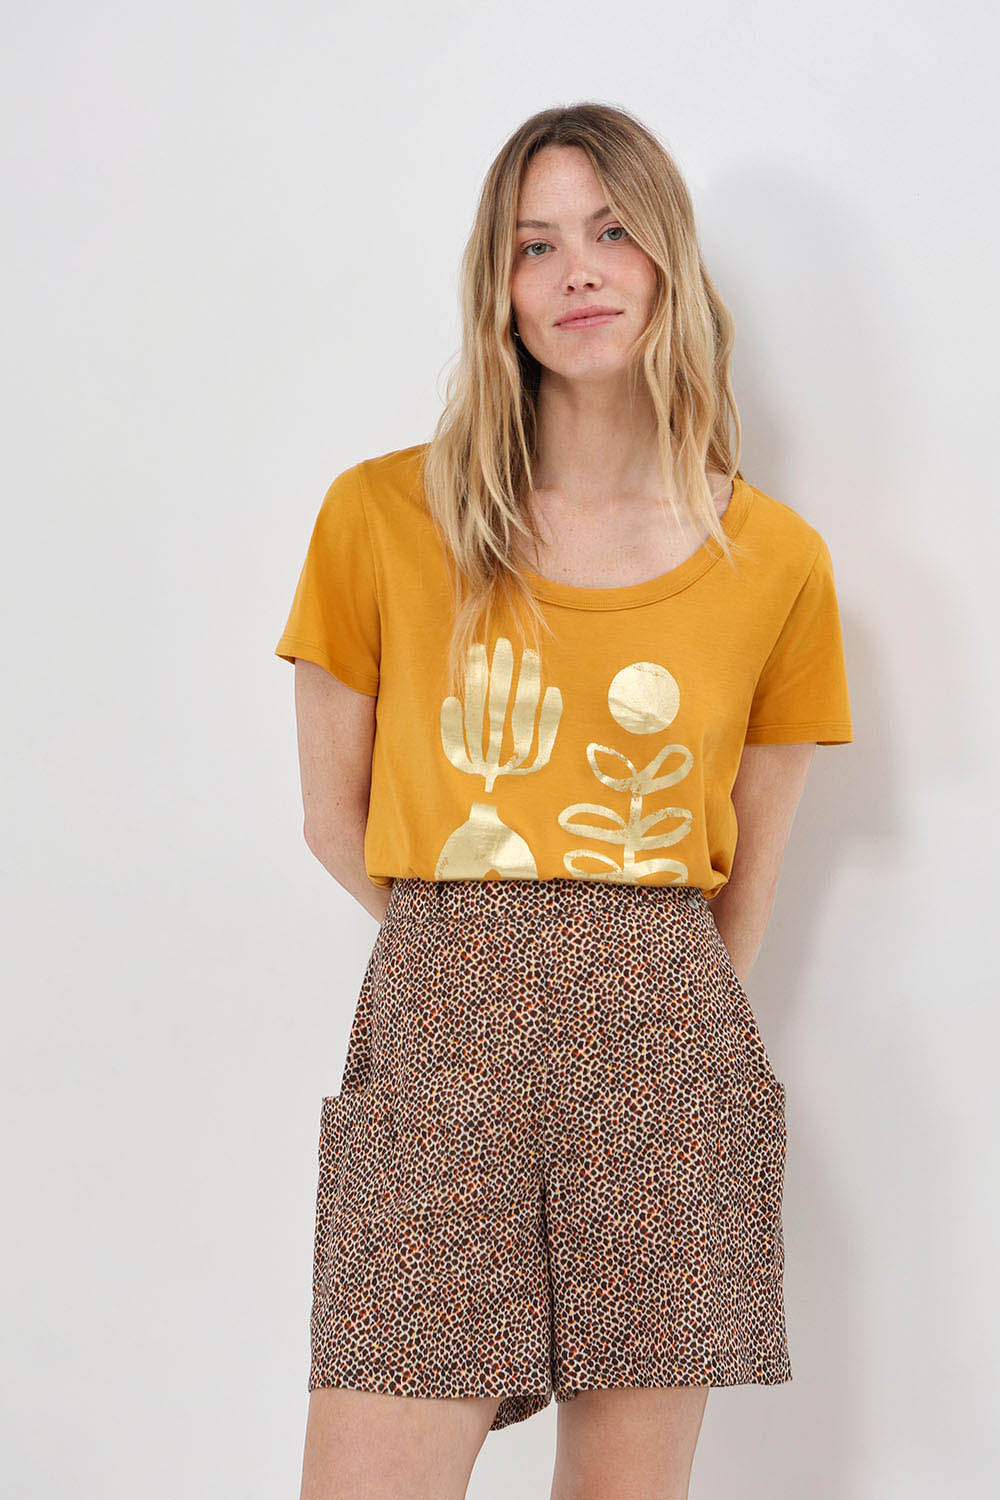 MAREVA - T-shirt miel coton bio visuel arty minimal